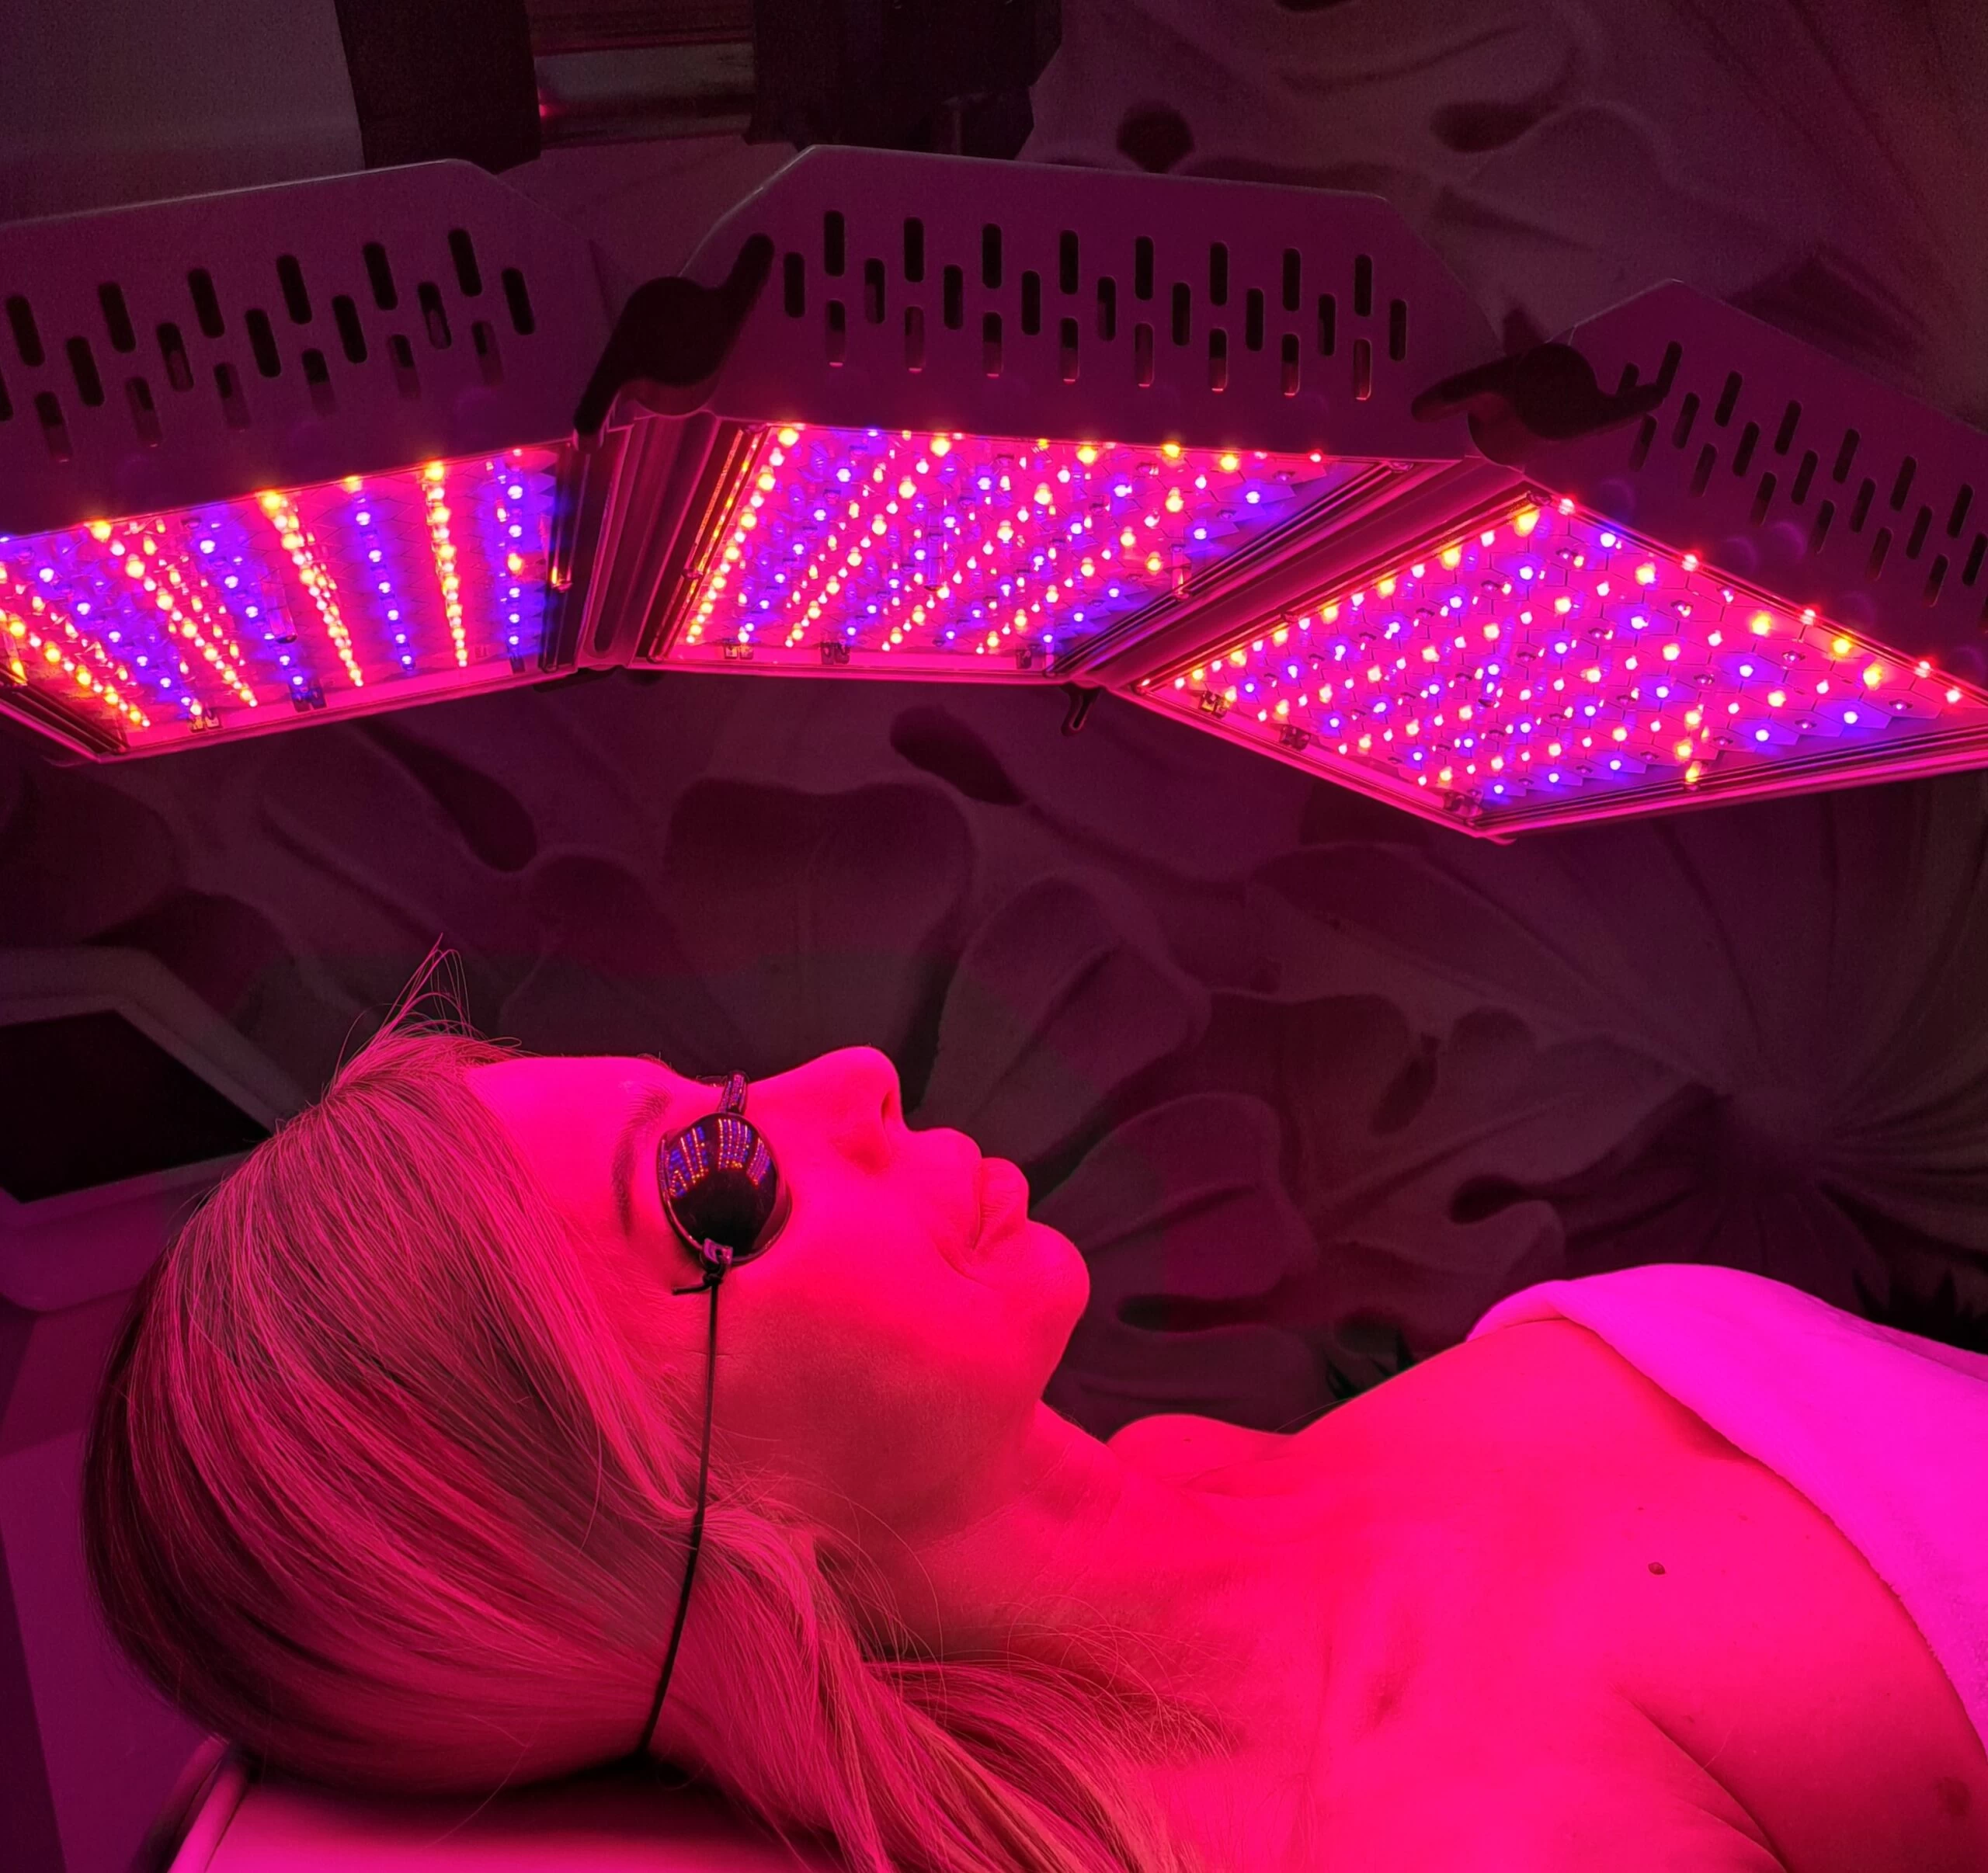 Kobieta leżąca w gabinecie podczas zabiegu z wykorzystaniem lampy LED, która świeci różowym kolorem